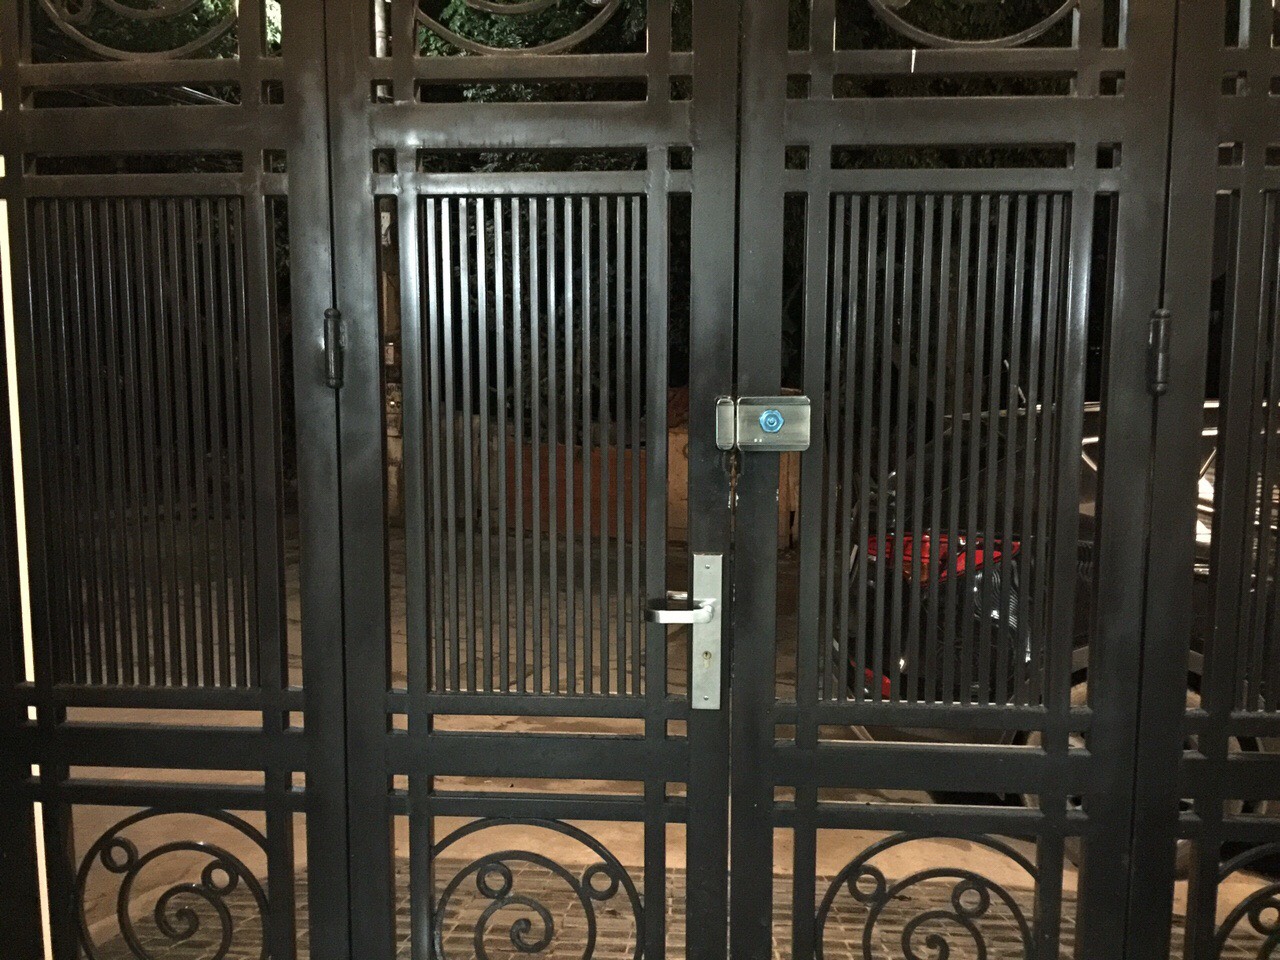 Khóa chốt cổng kết nối thẻ từ biệt thự A Giang -Bắc Ninh